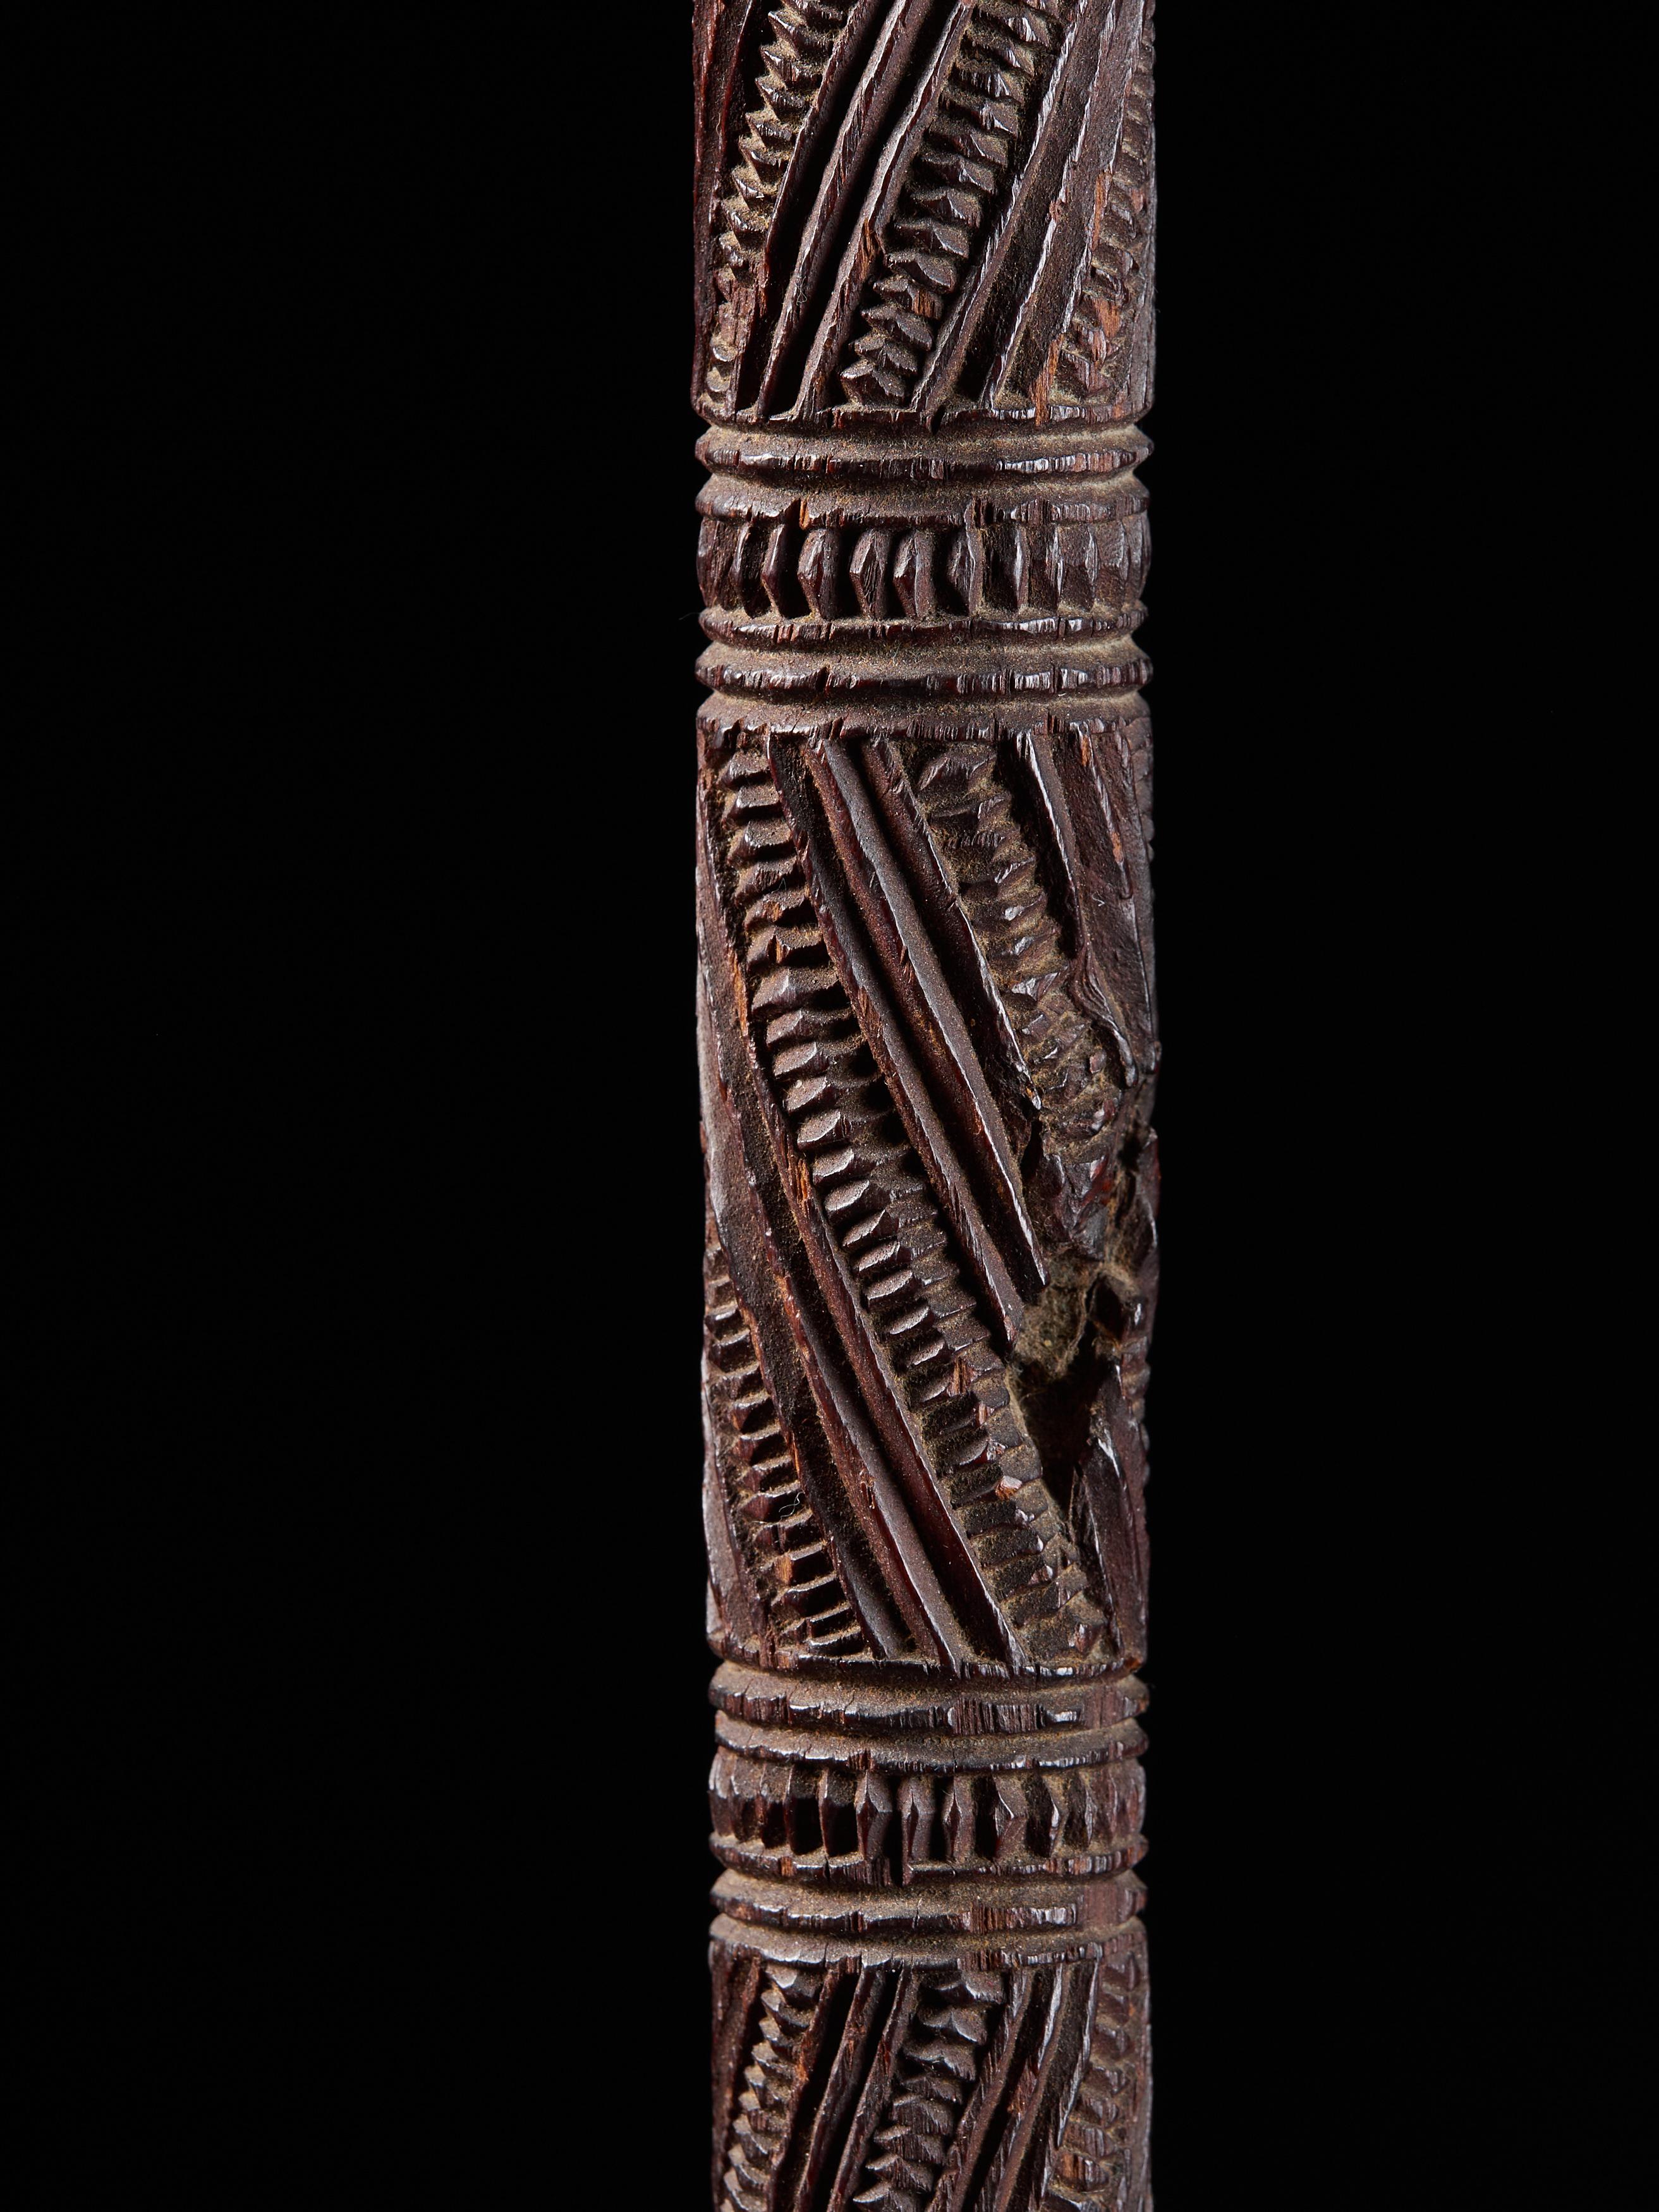 Very Elegant Tokotoko, Carved Maori Walking or Orators Stick 4